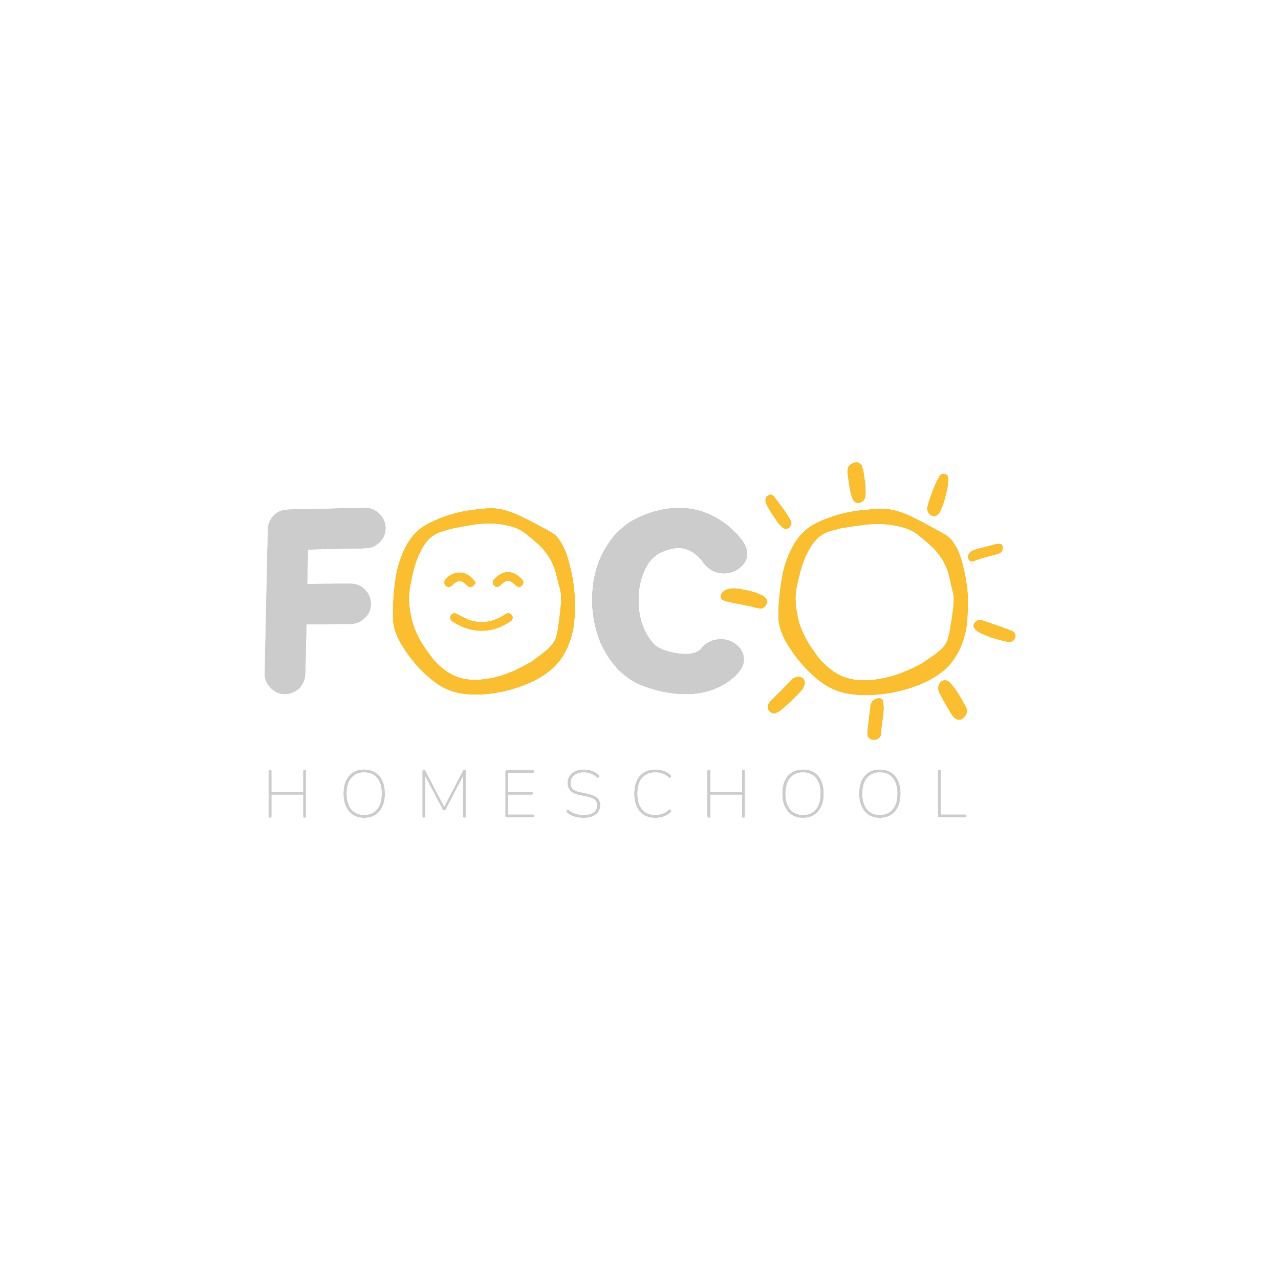 Foco Homeschool | Sicon